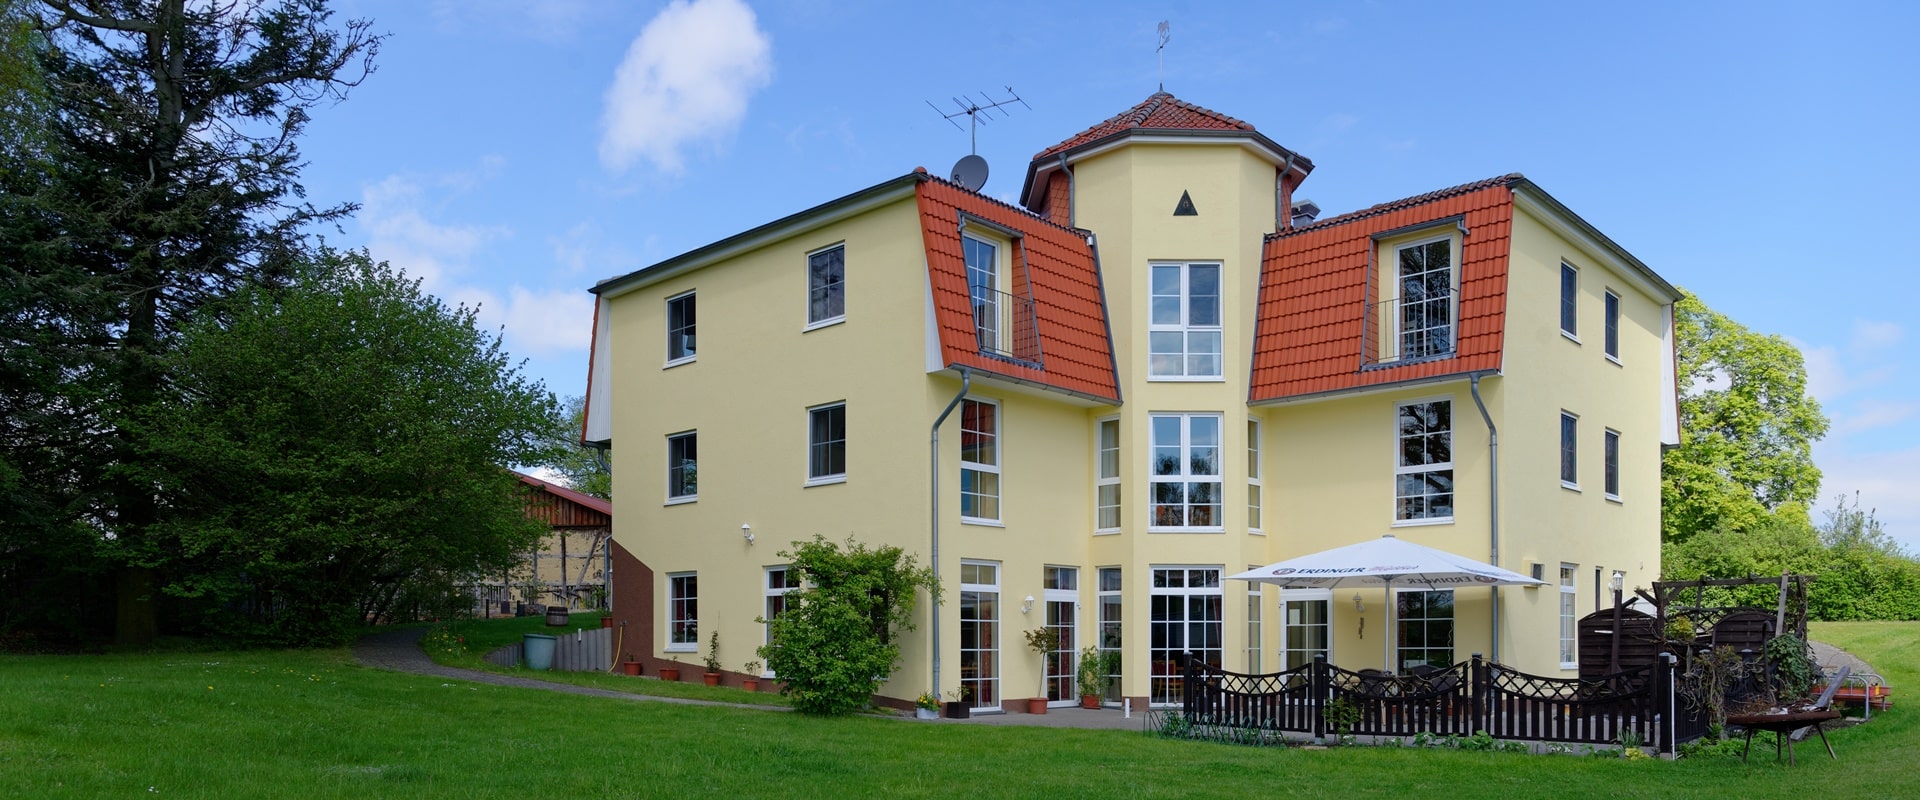 Landhaus Mirow in Peetsch am See